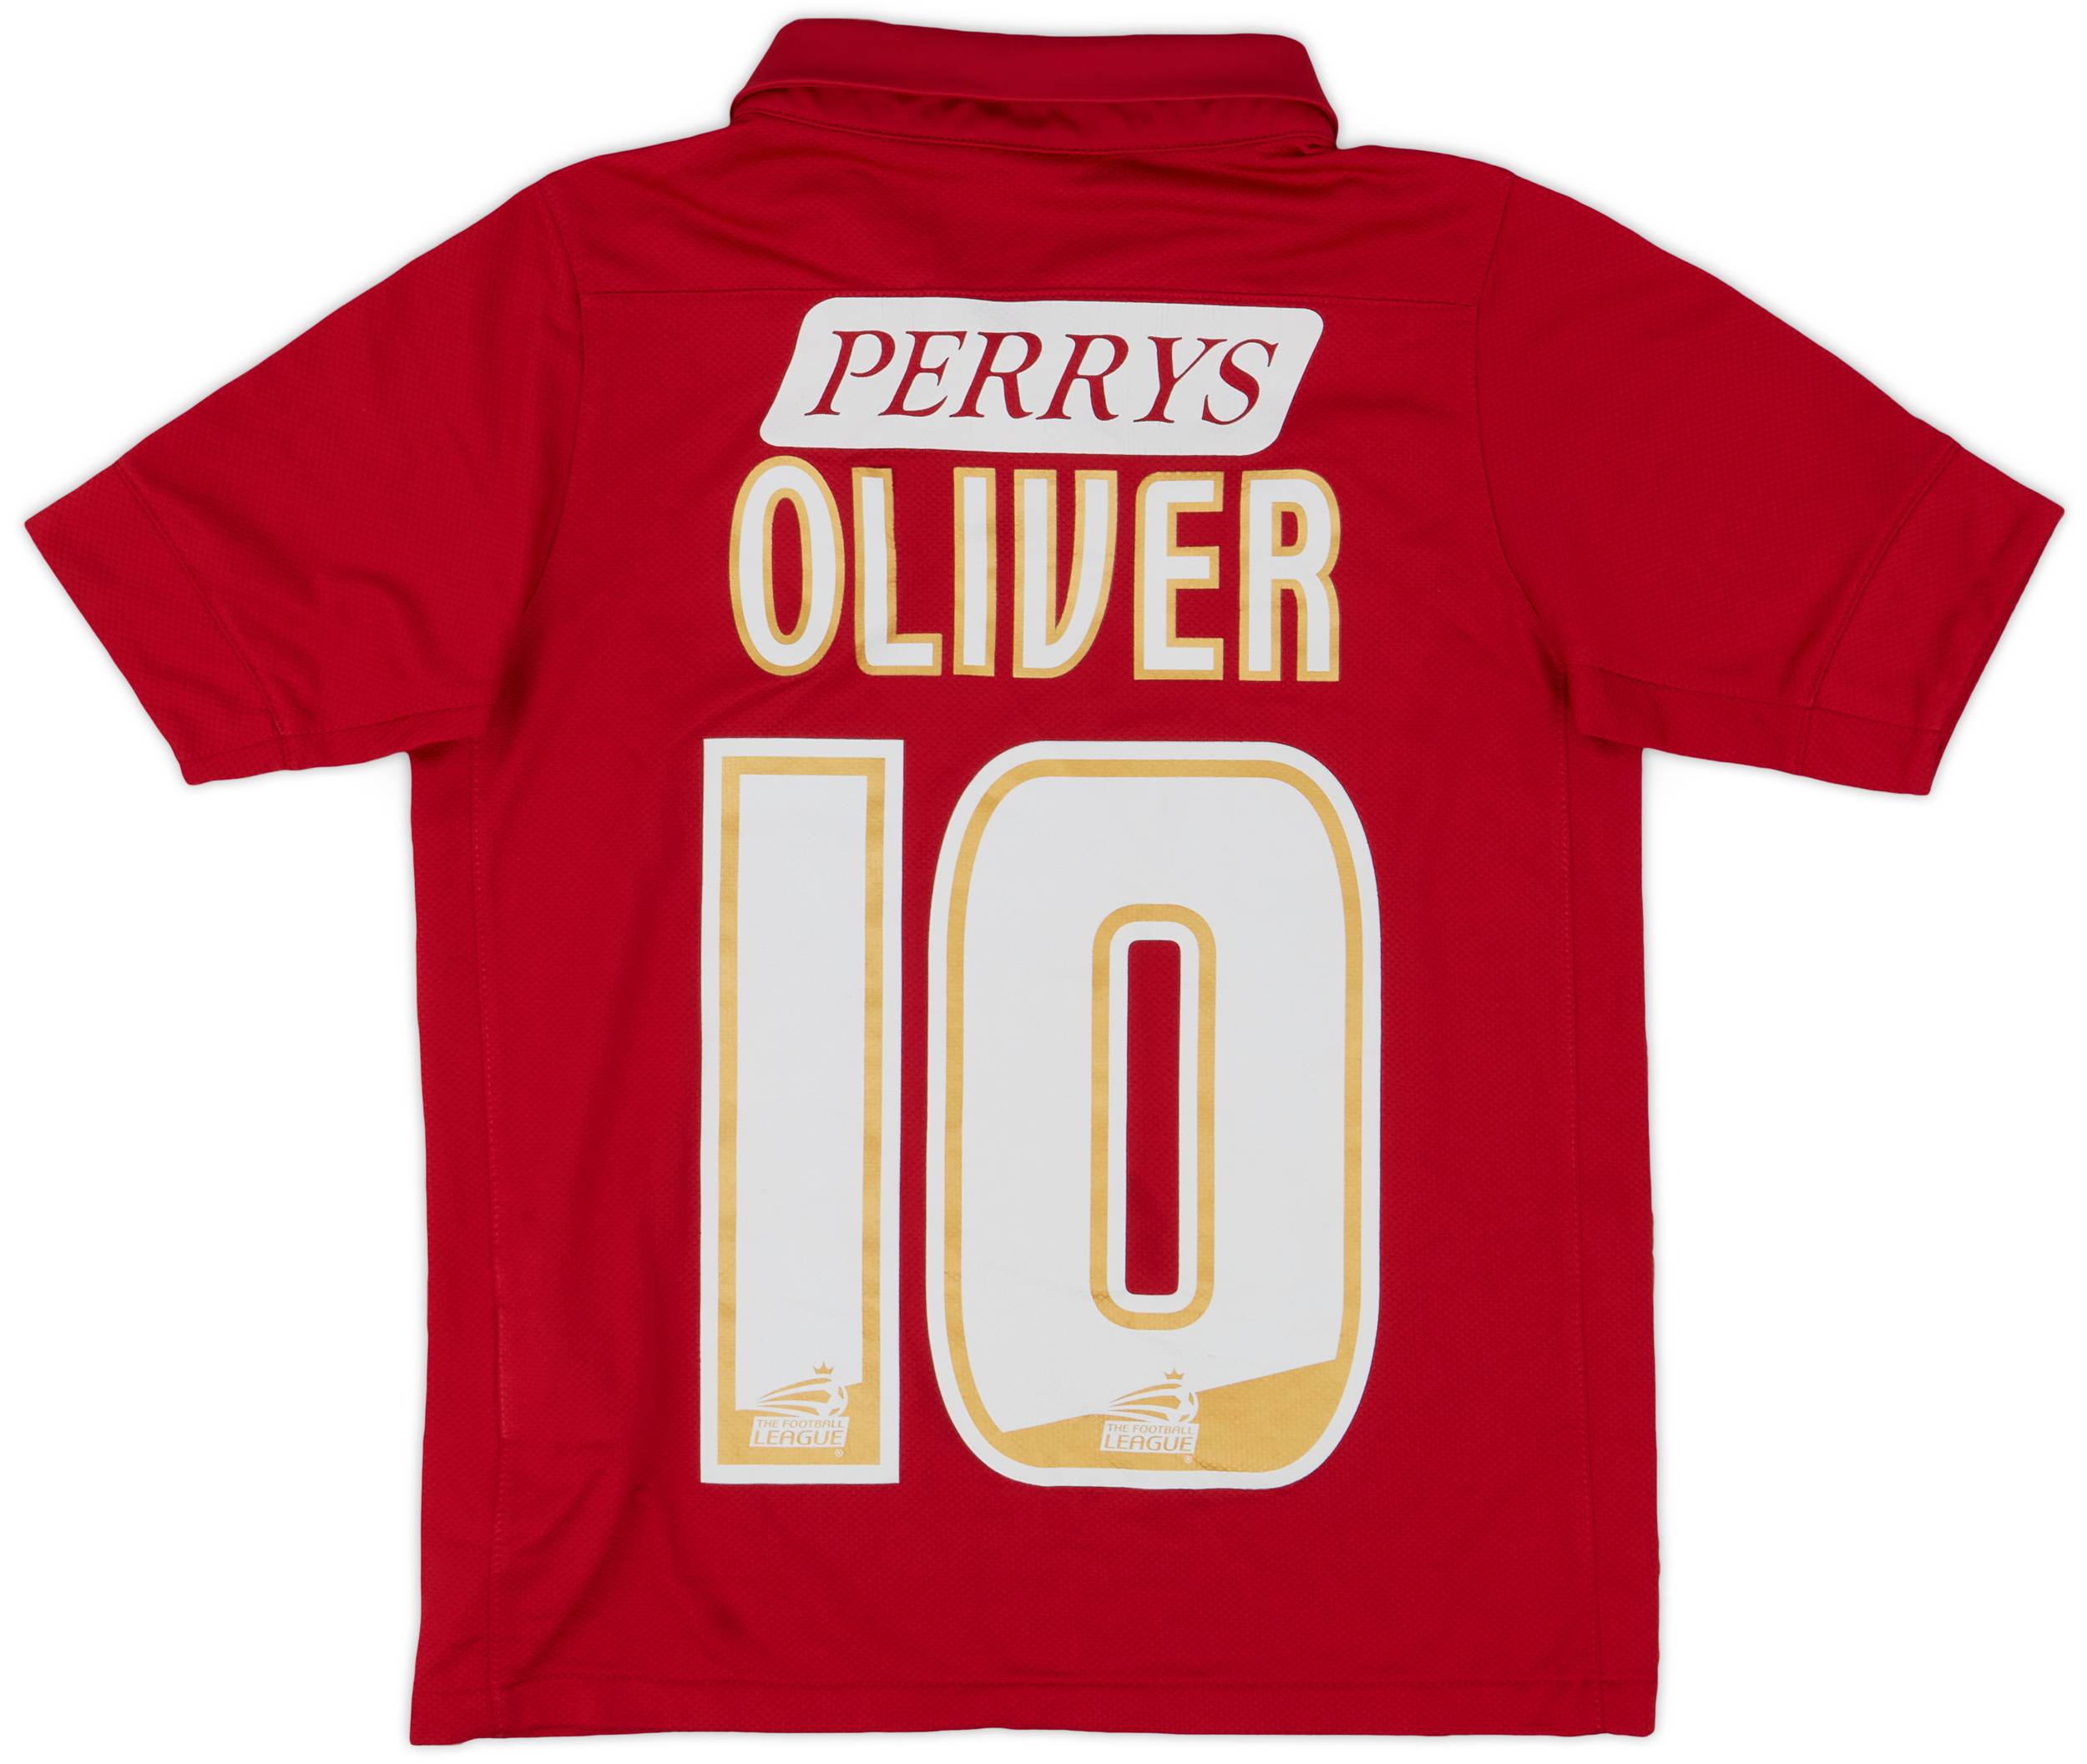 2011-12 Barnsley Home Shirt Oliver #10 - 9/10 - (XS.Boys)